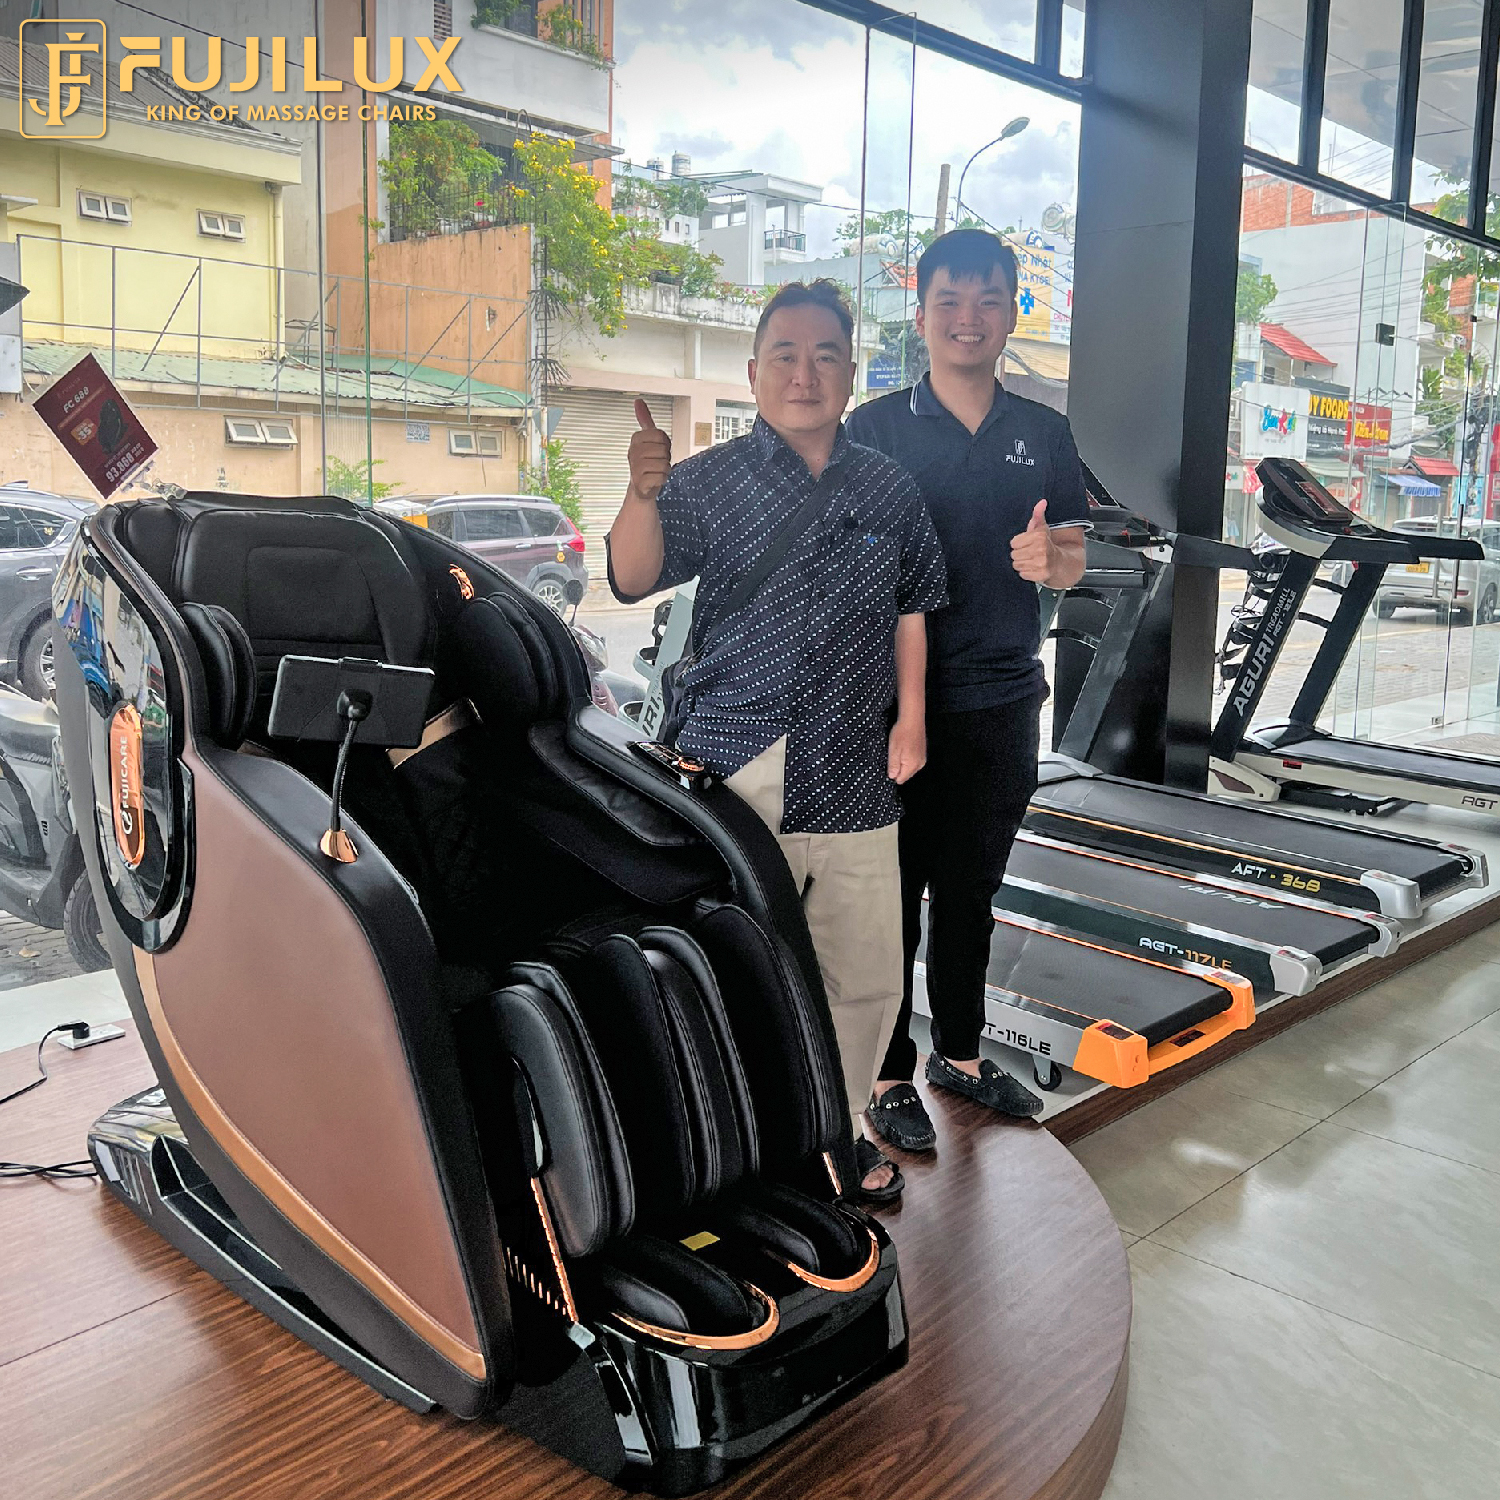 Fuji Luxury mang đến sự hài lòng và thoải mái nhất cho tất cả quý khách hàng